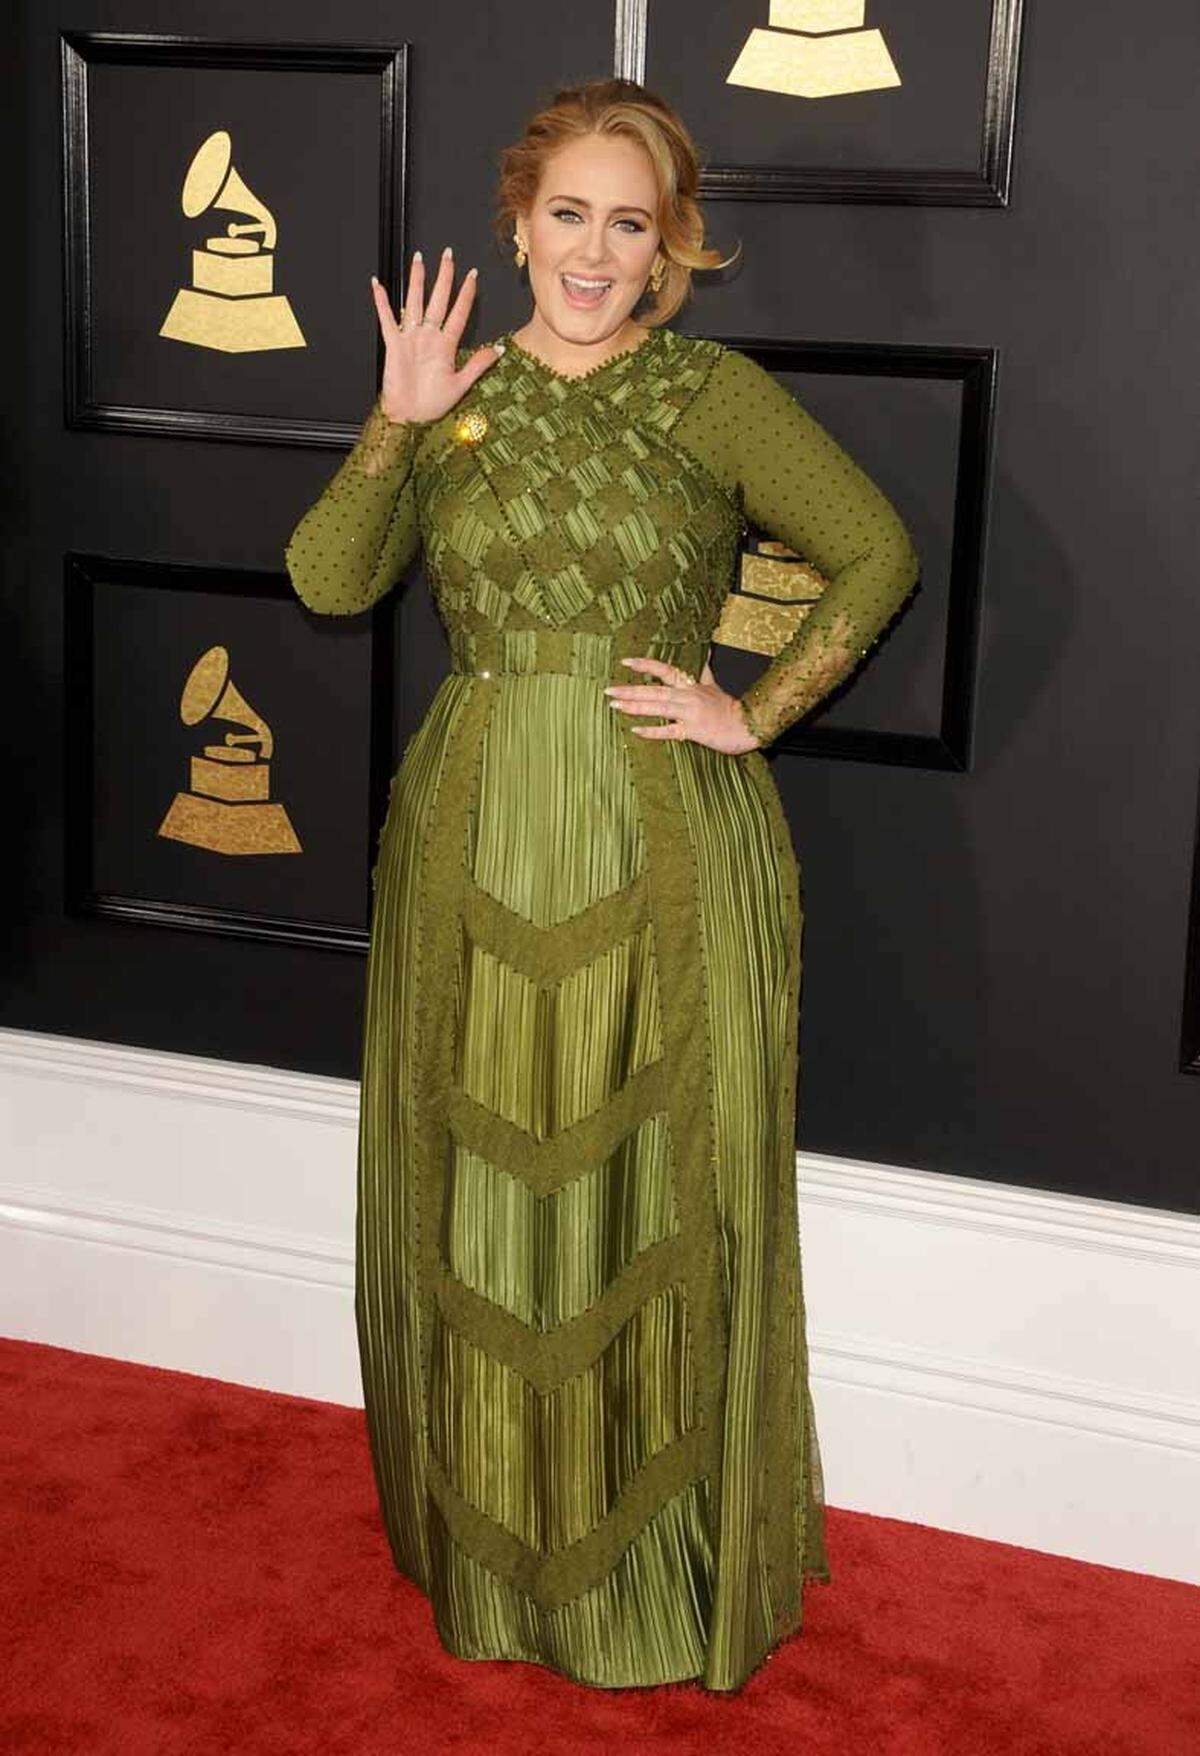 Die Abräumerin des Abends war Adele, die mit gleich fünf der begehrten Trophäen ausgezeichnet wurde. Album des Jahres ("25"), Song des Jahres ("Hello"), Aufnahme des Jahres ("25"), beste Pop-Solo-Performance ("Hello") und bestes Pop-Gesangsalbum ("25"). Die Musikerin zeigte sich den Fotografen in einem grünen Kleid von Givenchy.